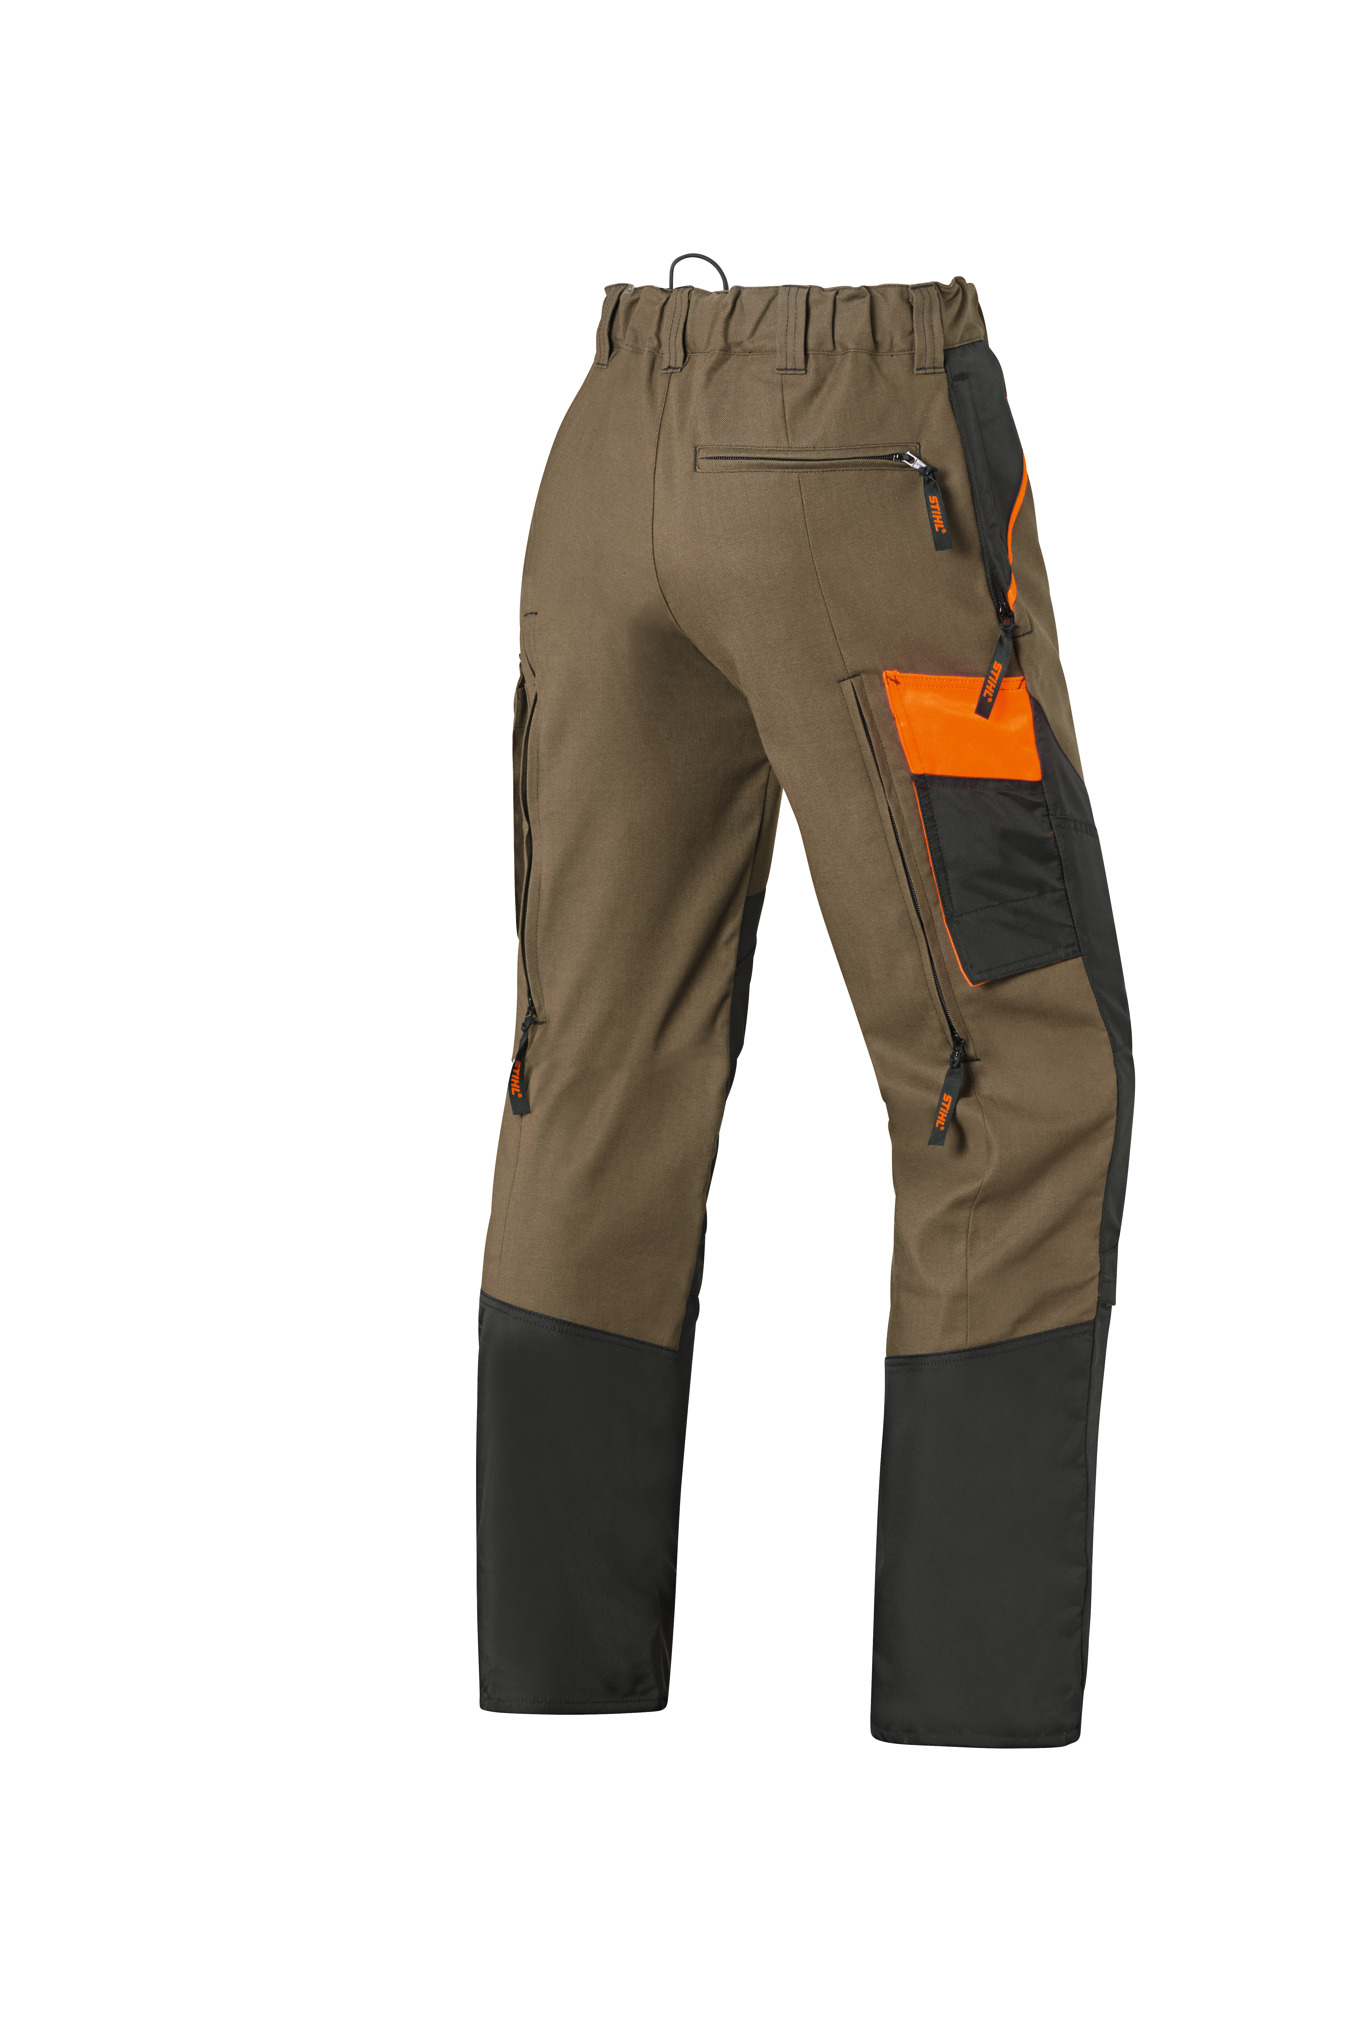 刈払作業用防護ズボン FS 3プロテクト